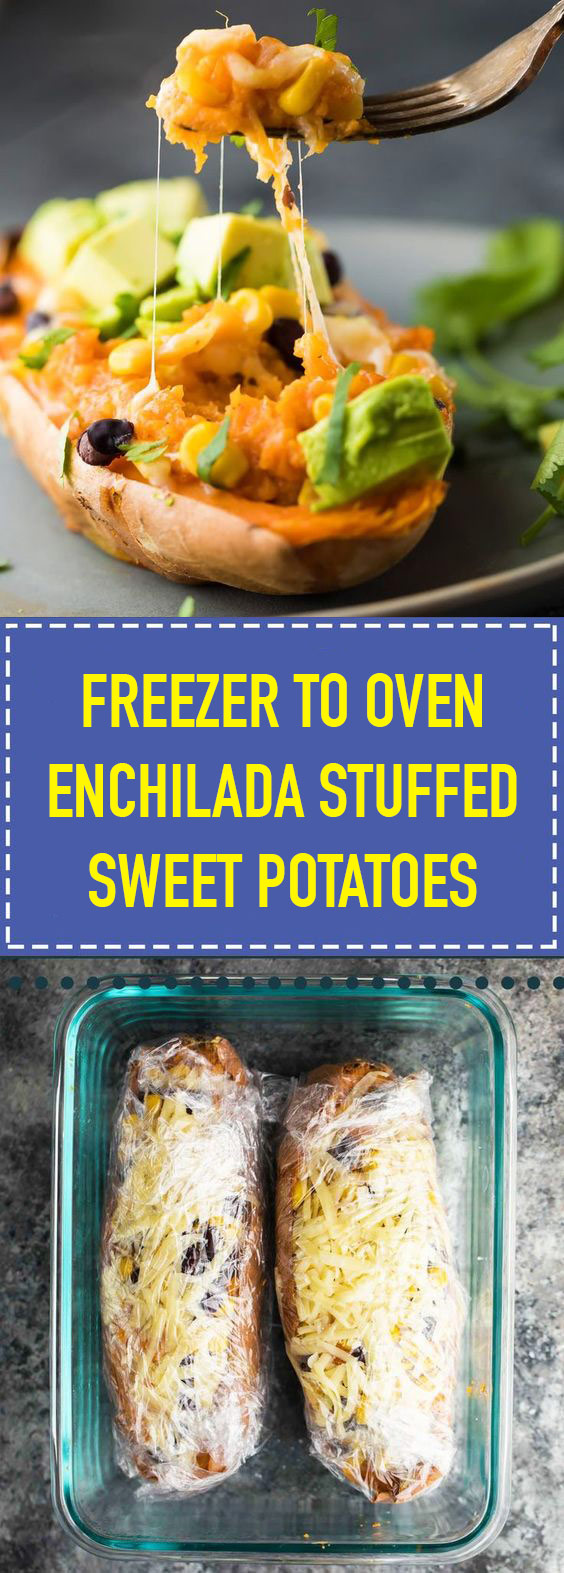 Freezer to Oven Enchilada Stuffed Sweet Potatoes